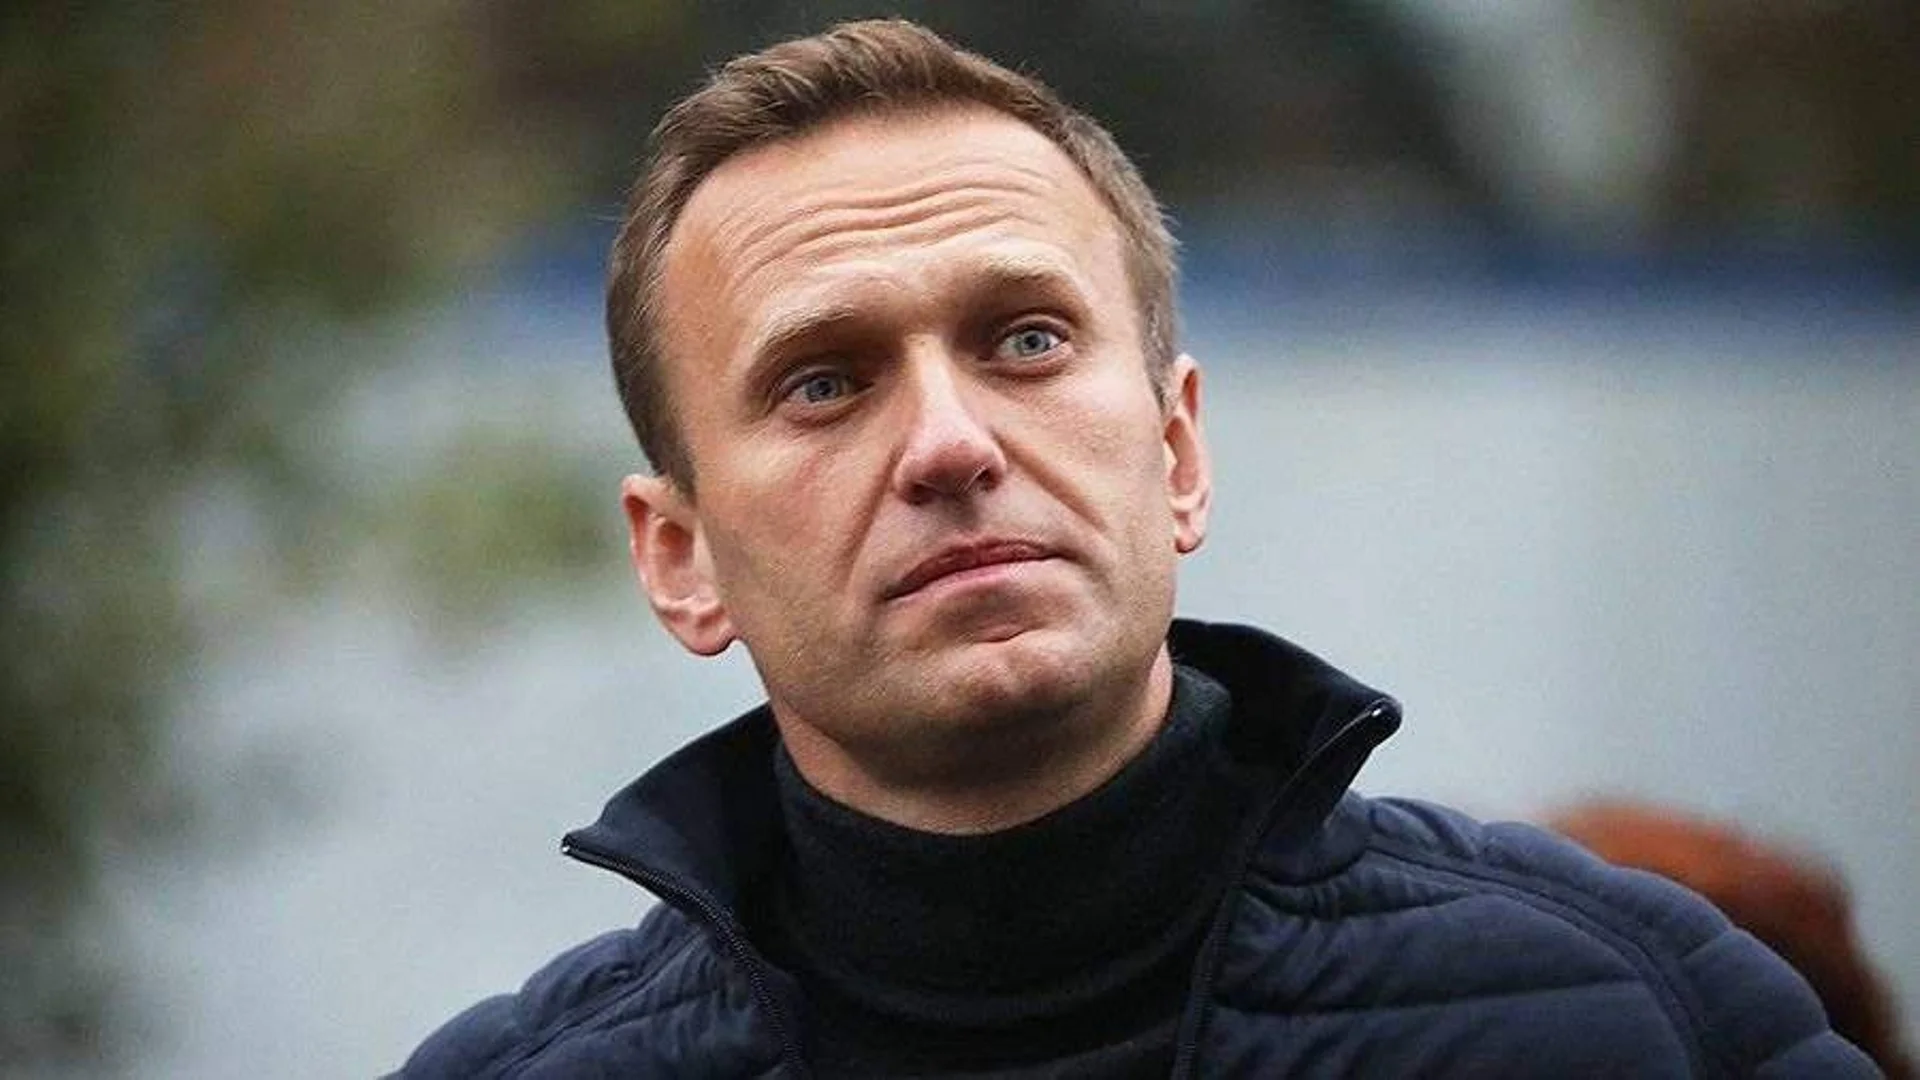 Карцер за незакопчано копче: Свидетел разказва за наказанията към Навални в затвора